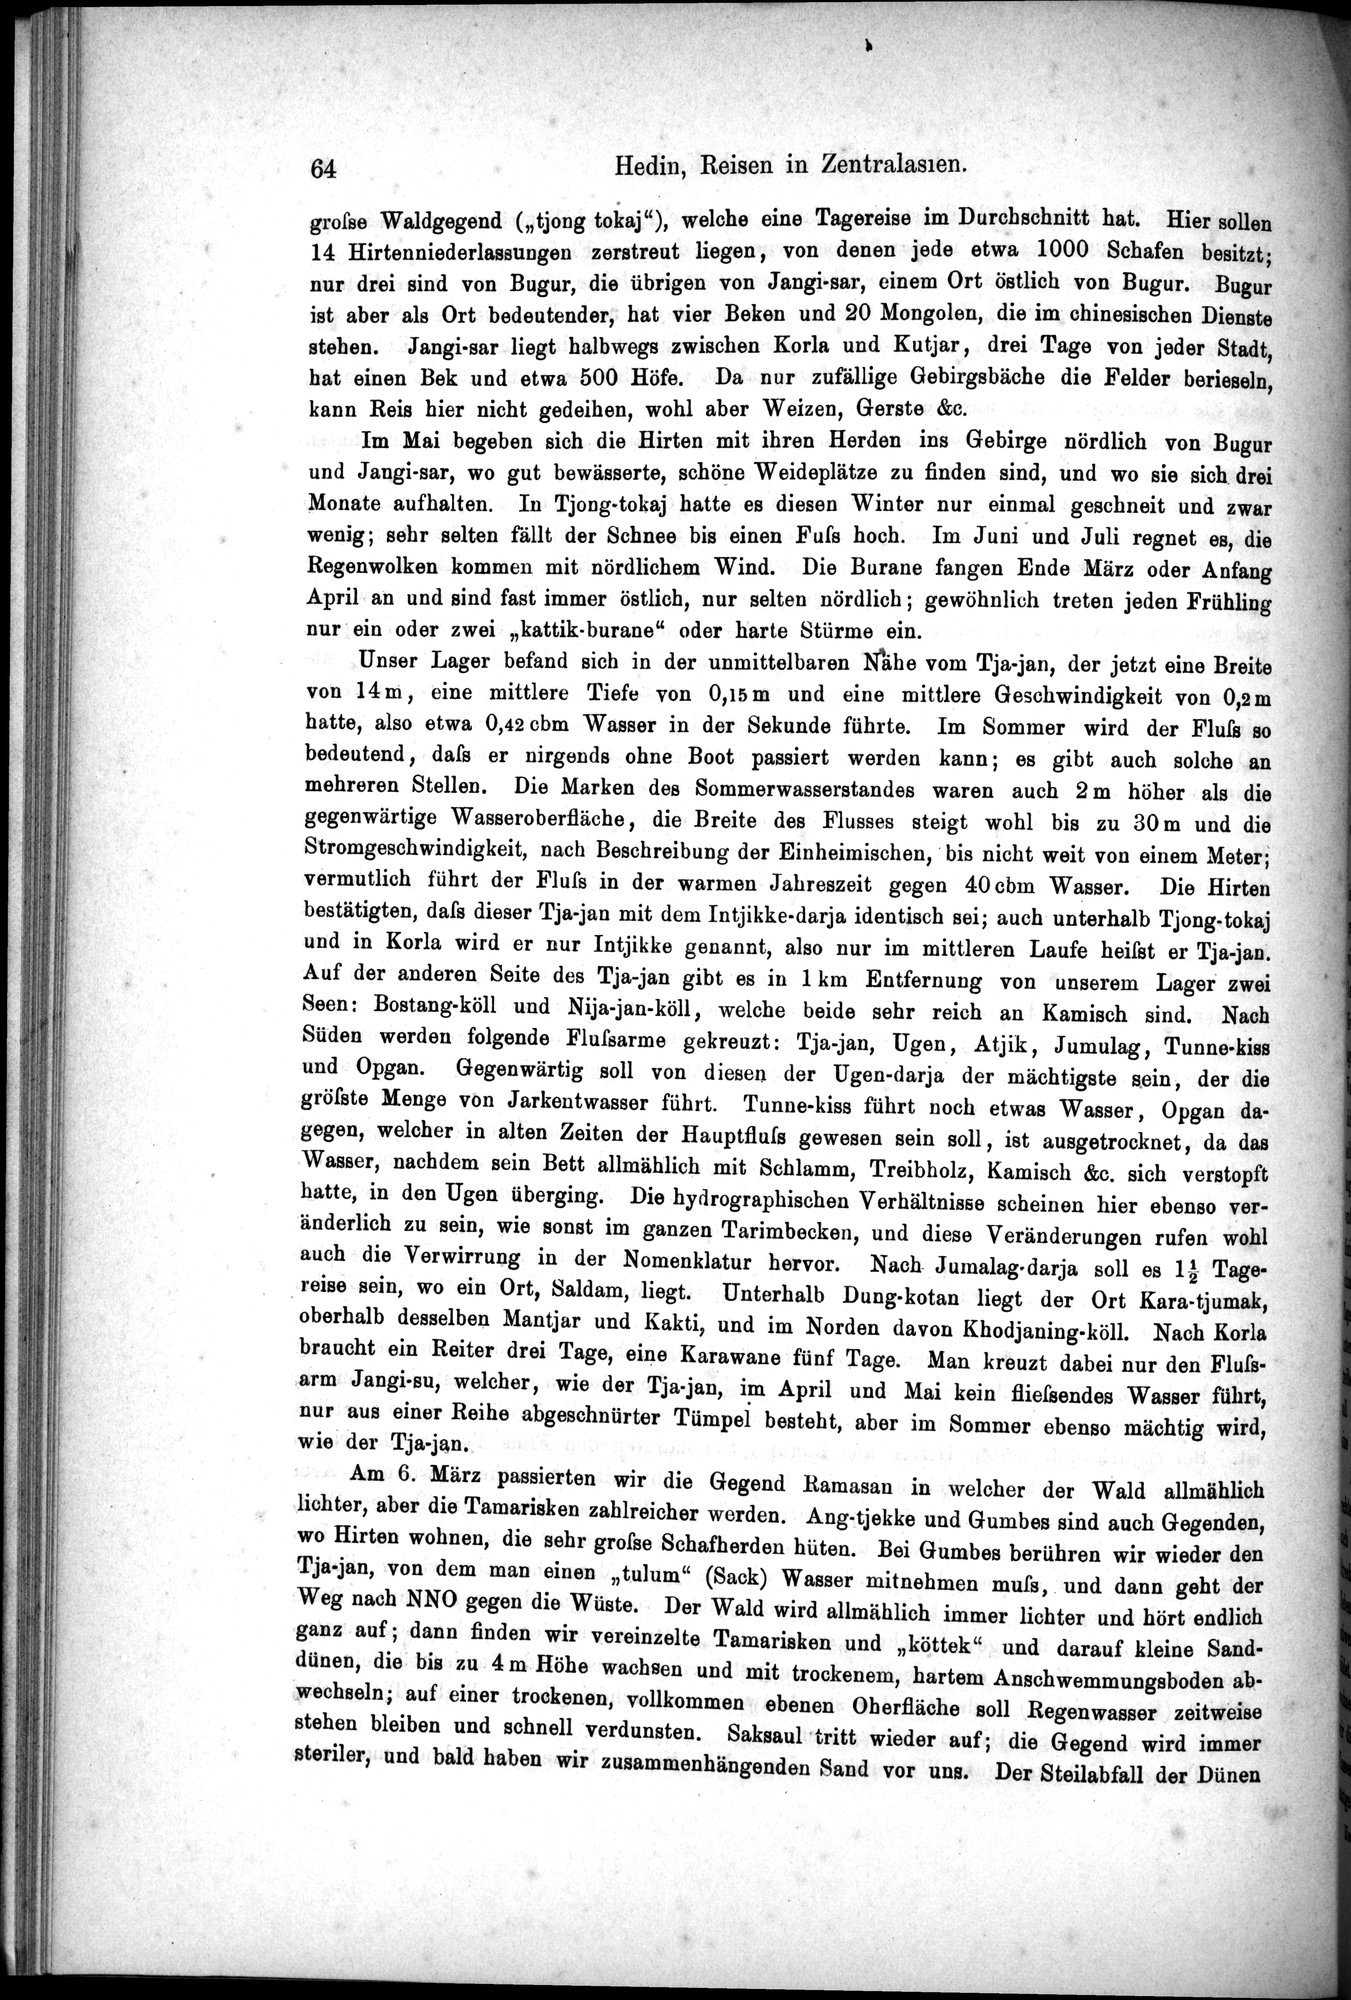 Die Geographische-Wissenschaftlichen Ergebnisse meiner Reisen in Zentralasien, 1894-1897 : vol.1 / Page 76 (Grayscale High Resolution Image)